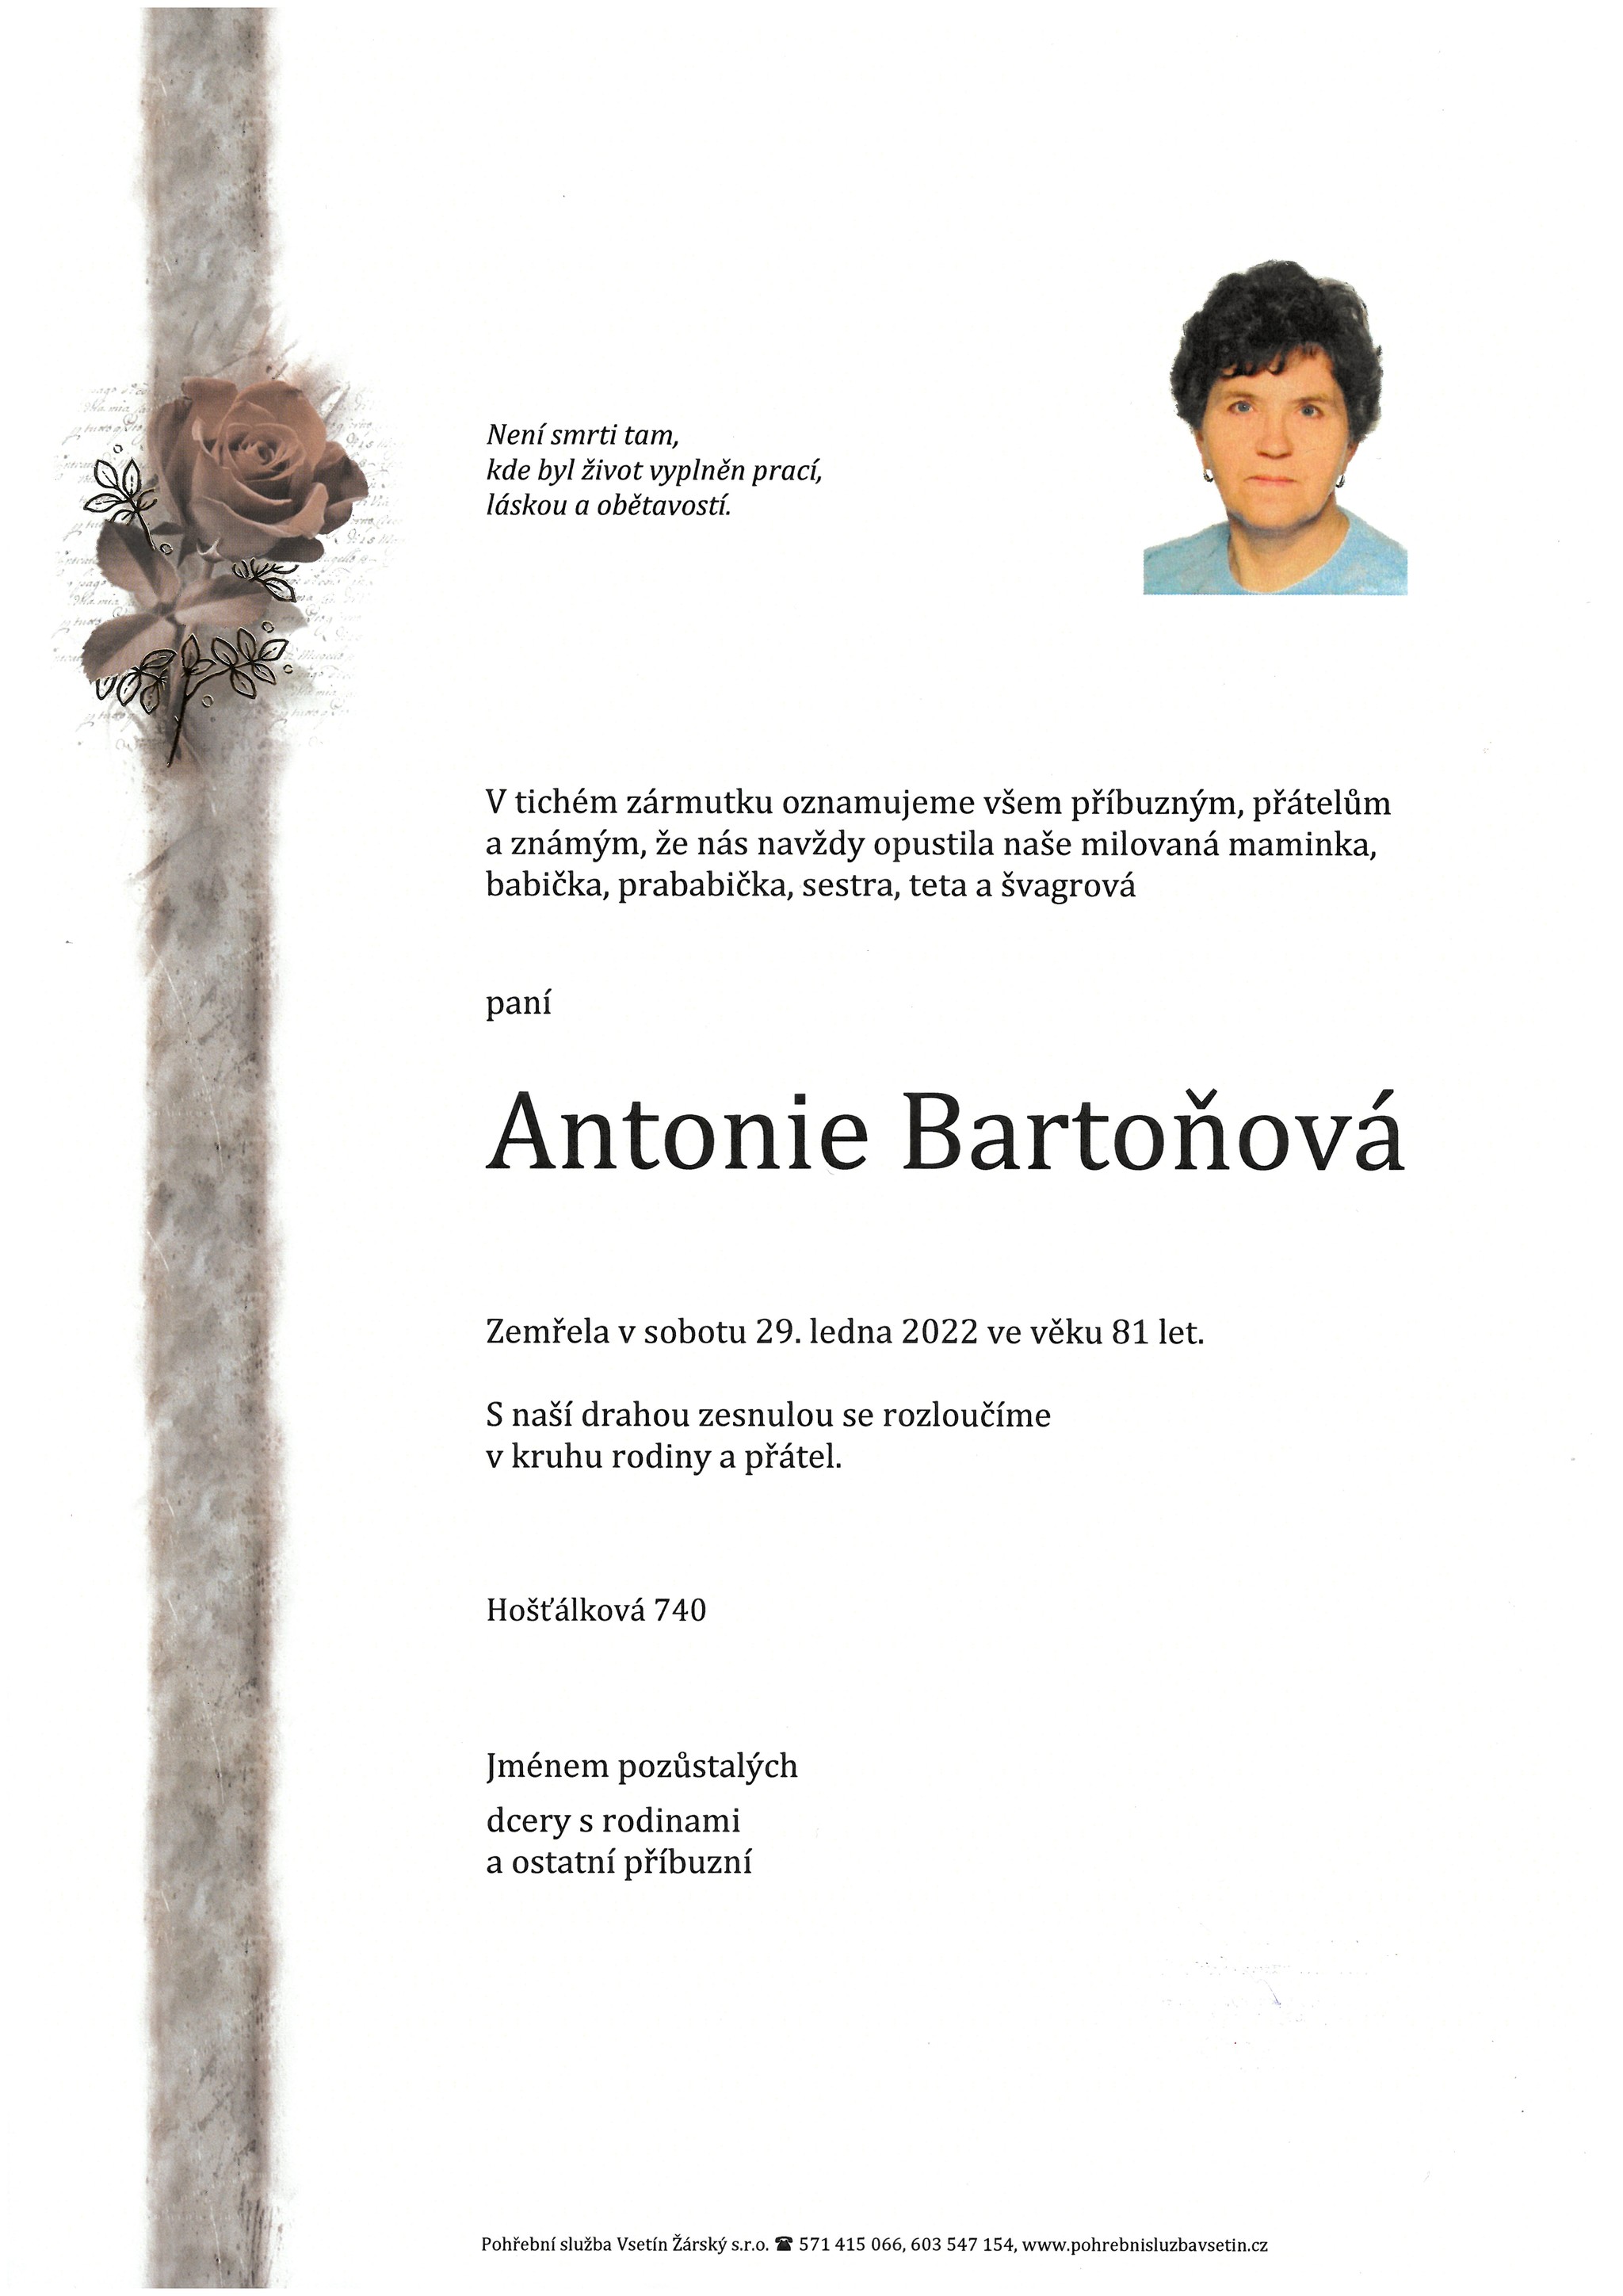 Antonie Bartoňová